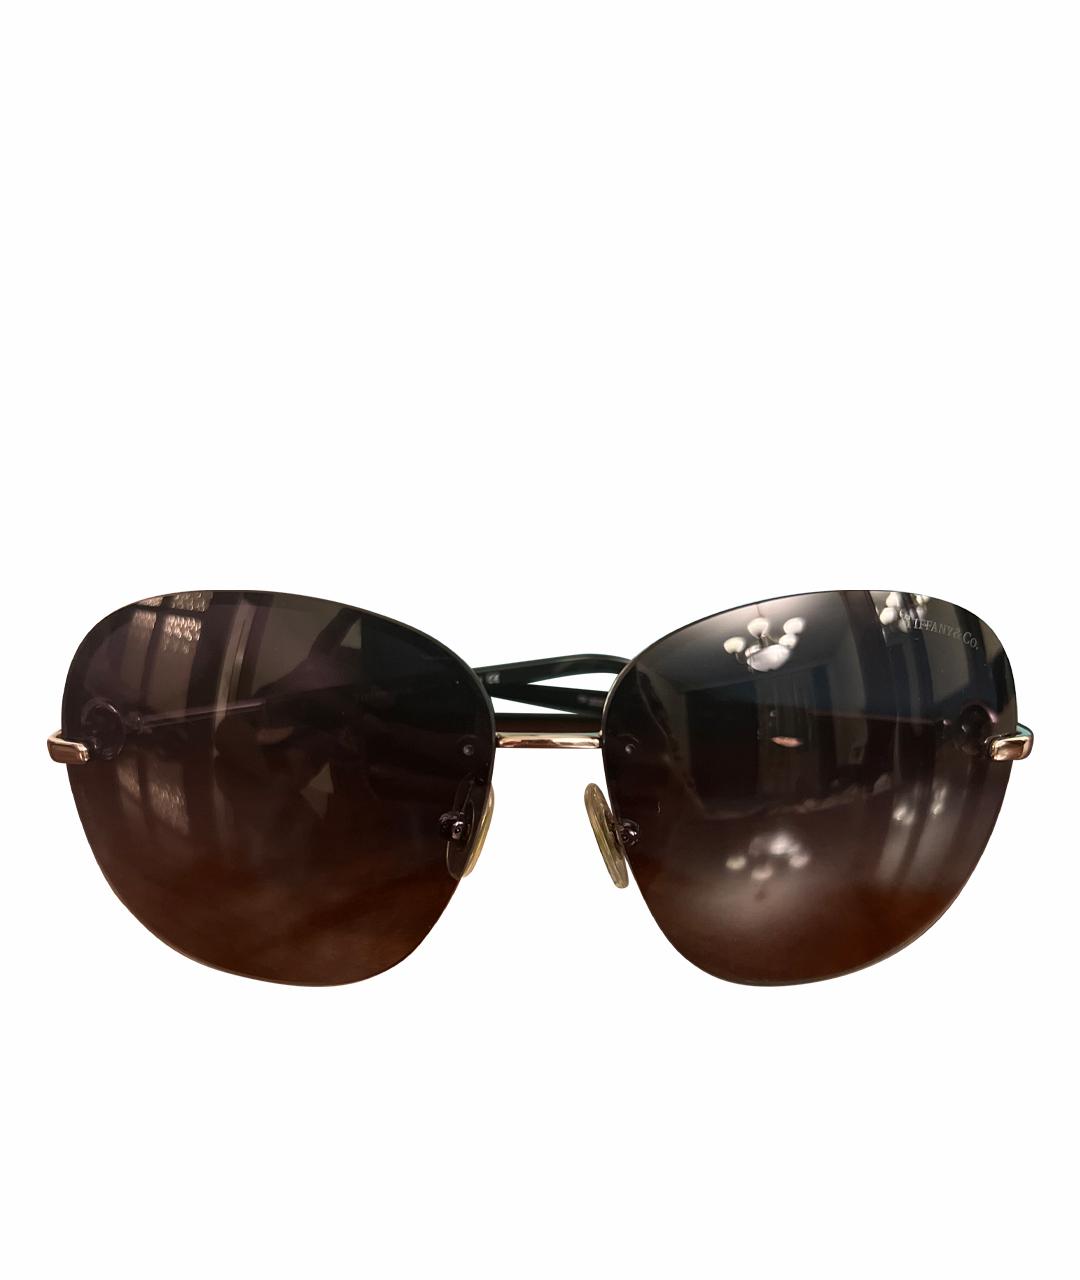 TIFFANY&CO Черные пластиковые солнцезащитные очки, фото 1